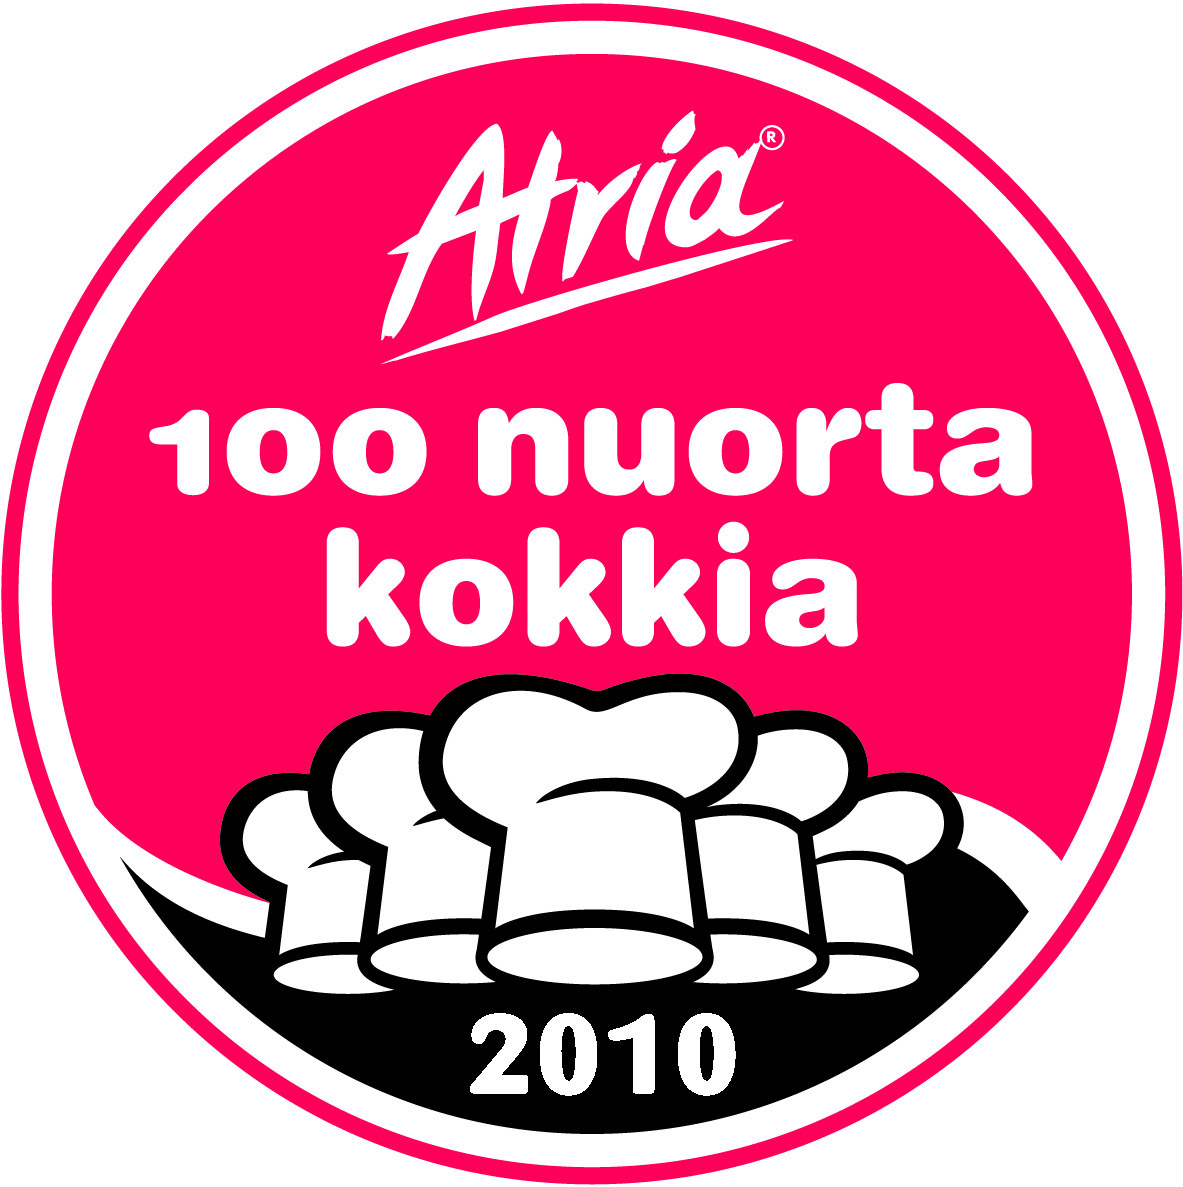 100_nuorta_kokkia_logo.jpg